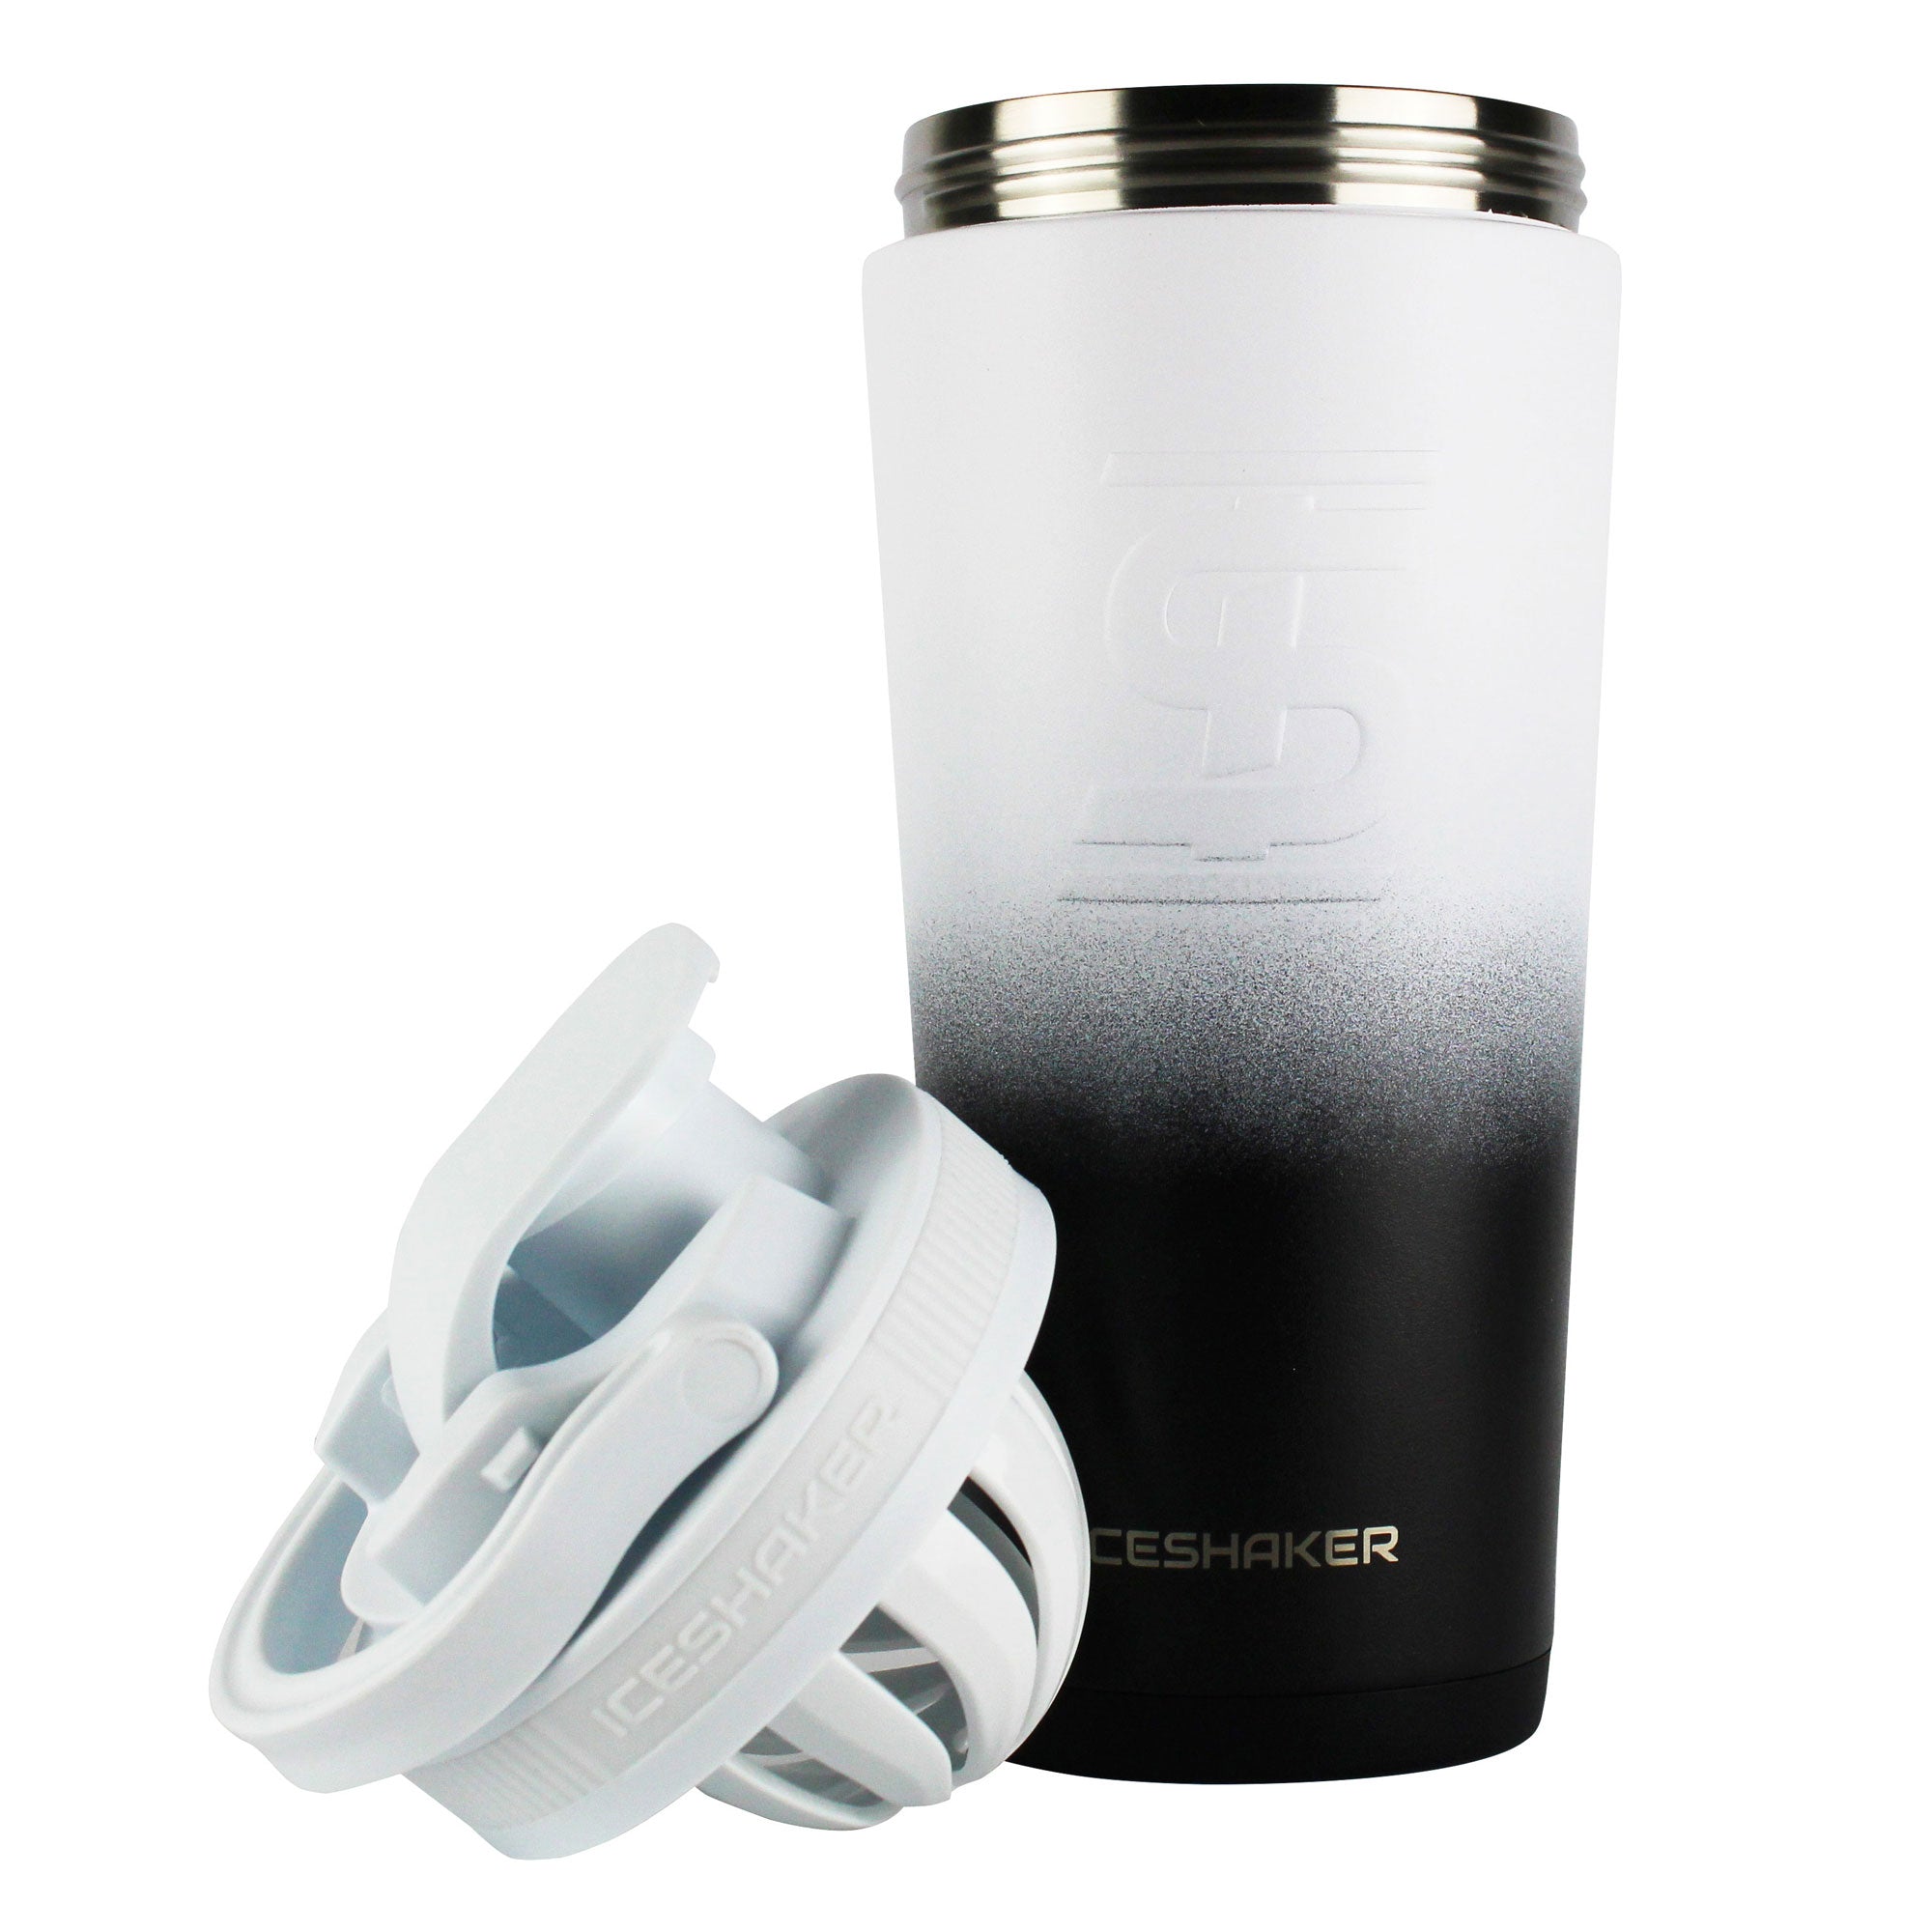 Ice Shaker 26 oz Black White Ombre Shaker Bottle